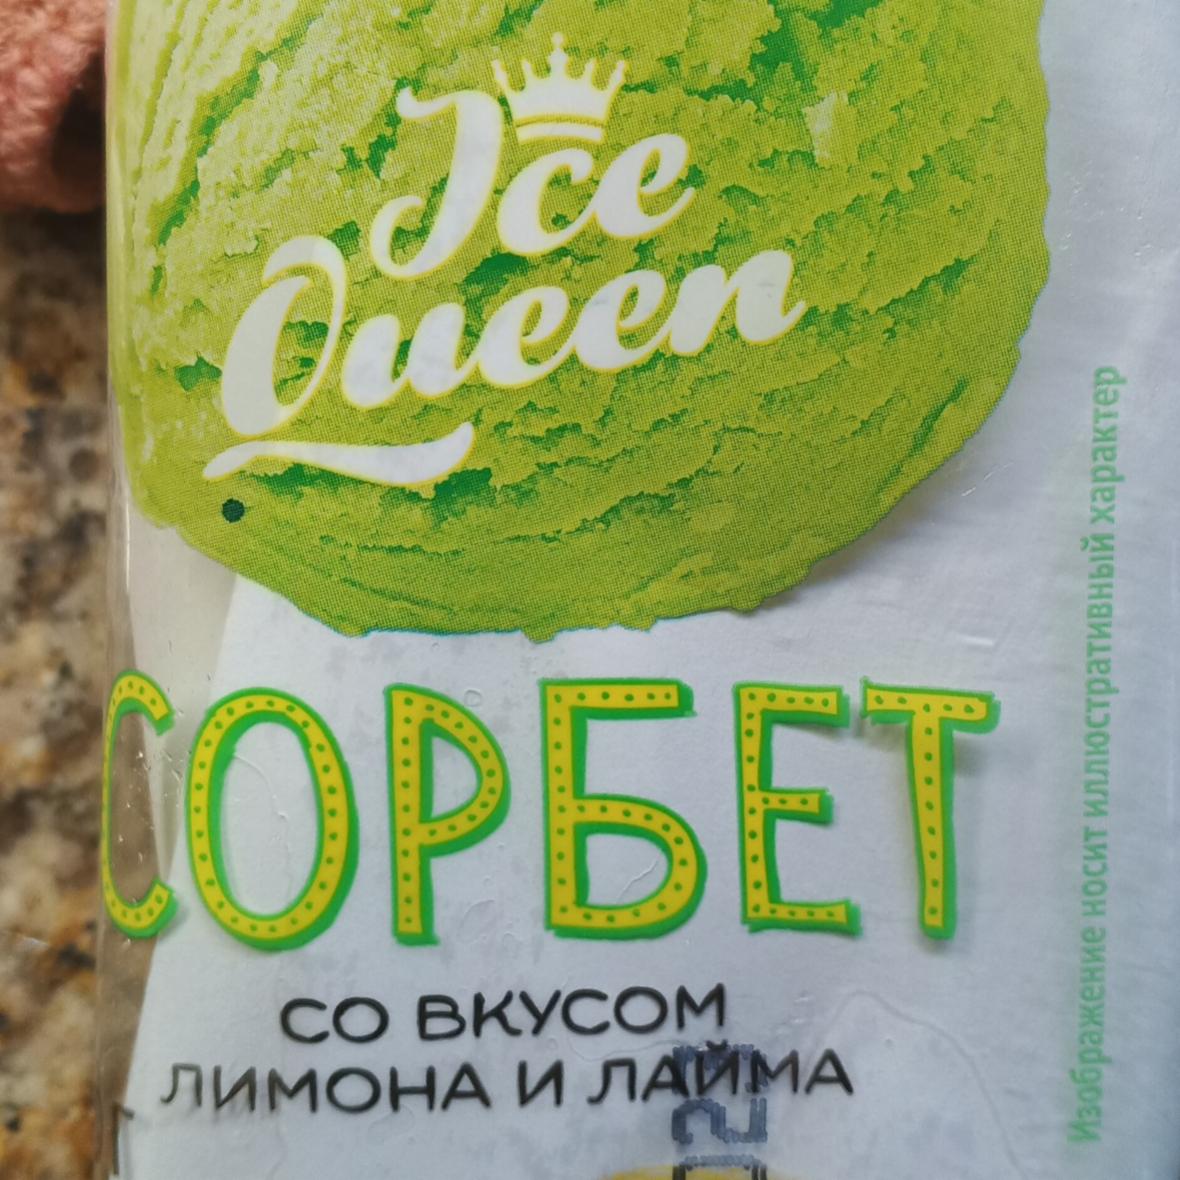 Фото - Сорбет со вкусом лимона и лайма Ice Queen